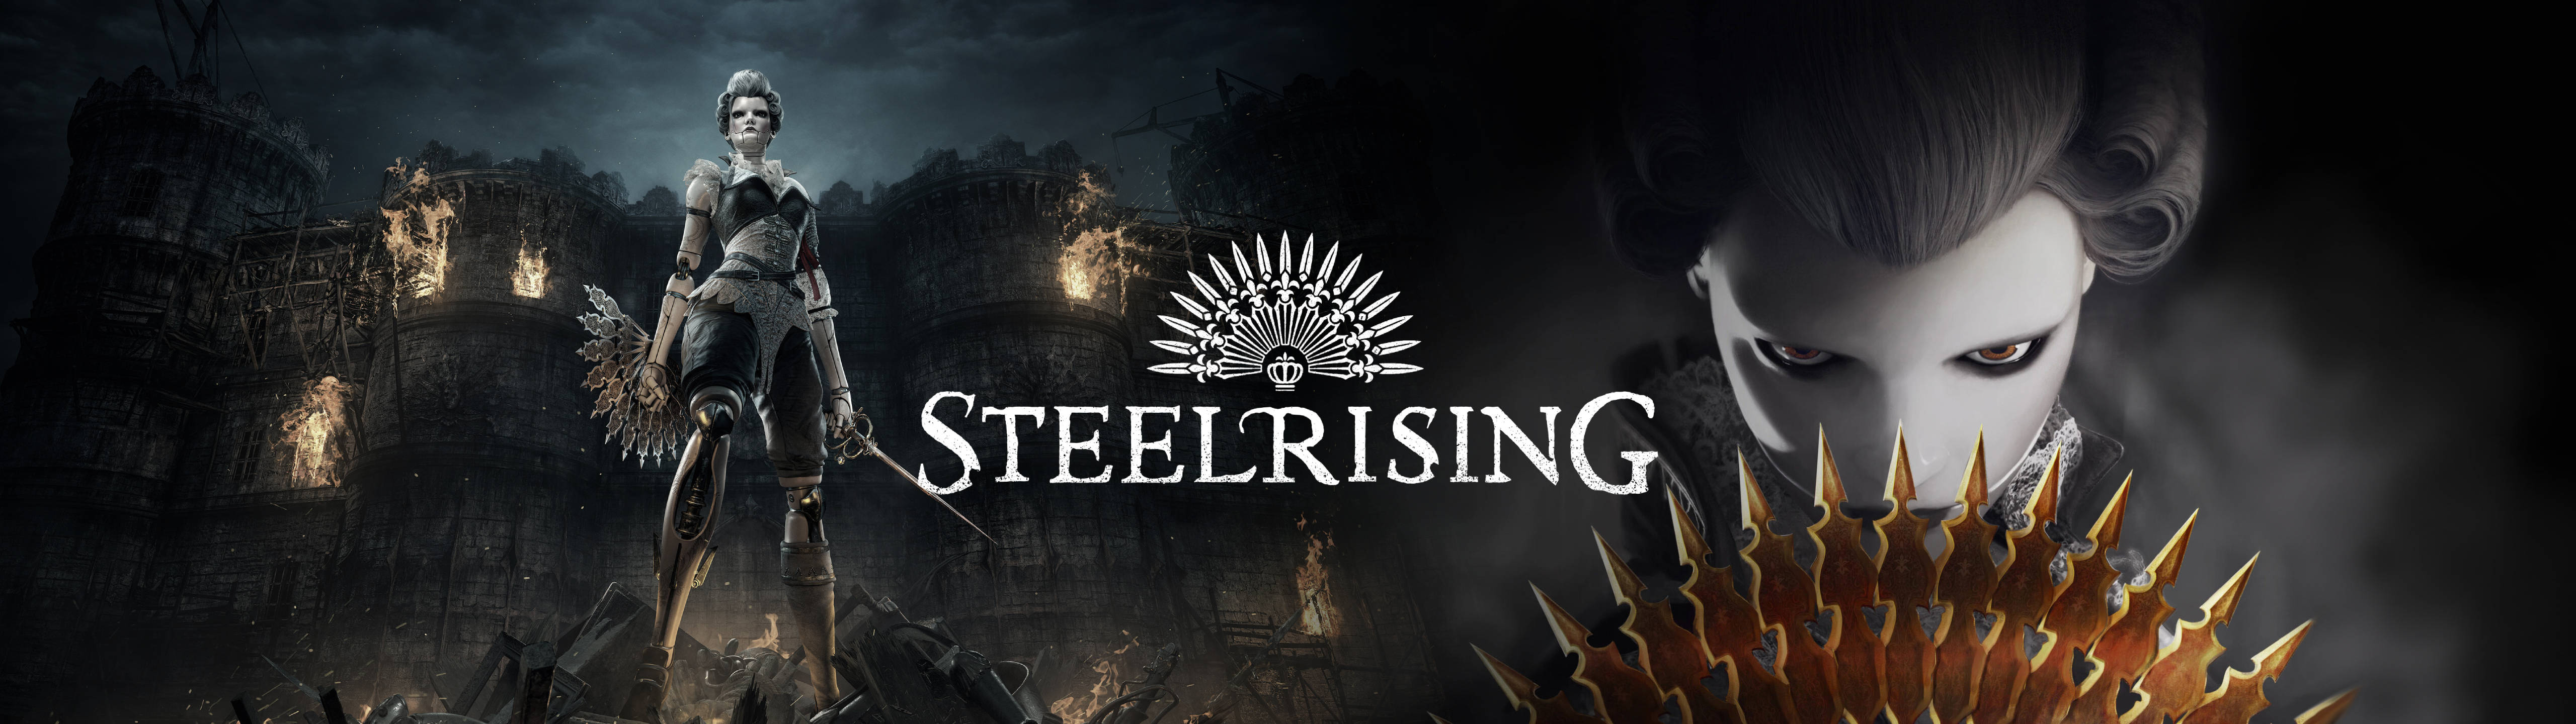 2022 Steelrising 5120x1440 Gaming Wallpaper